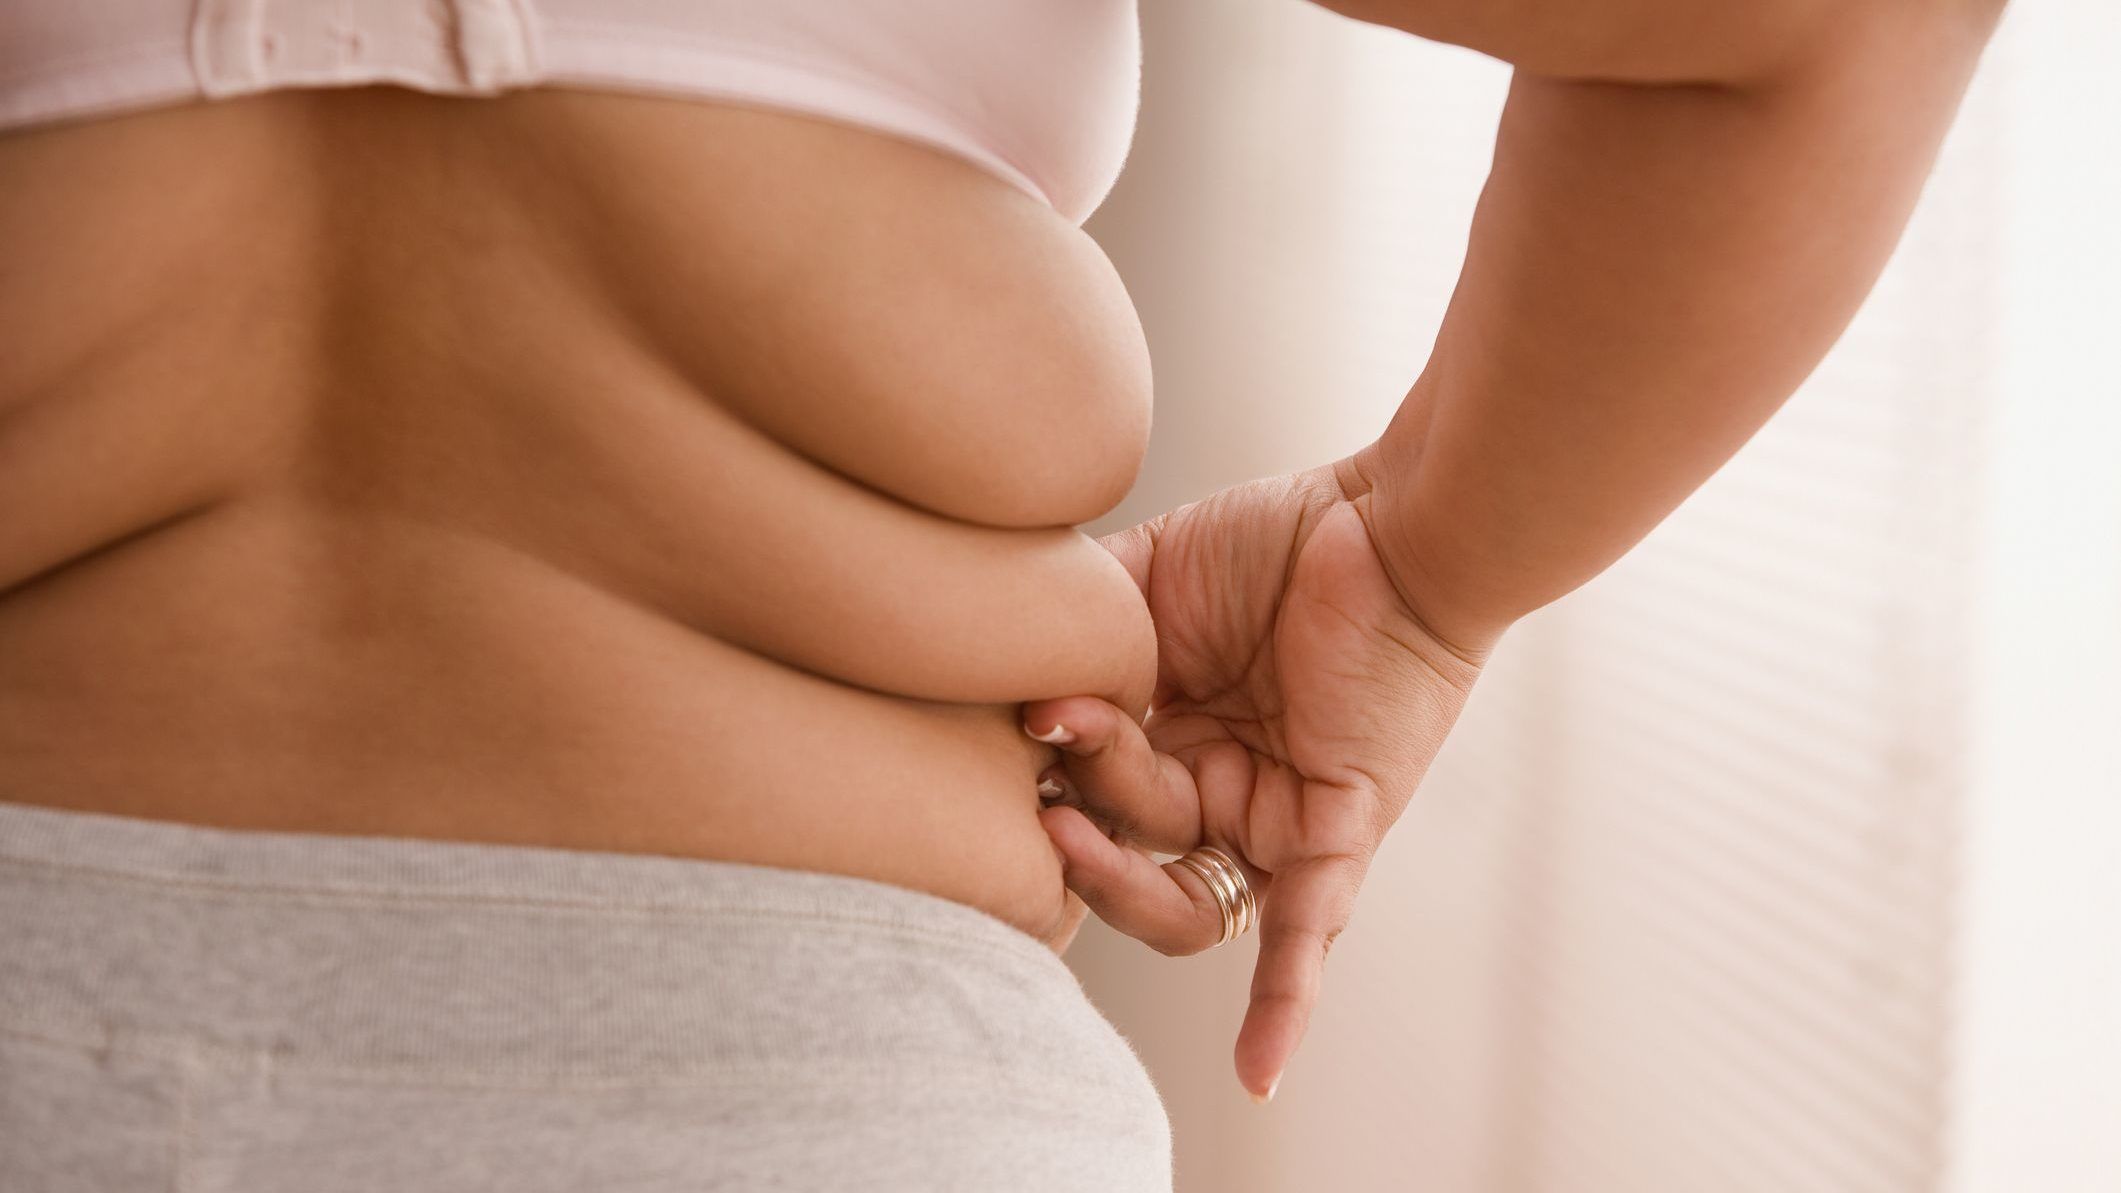 Koronavírus: komoly veszélyt jelent az elhízás a fiataloknál